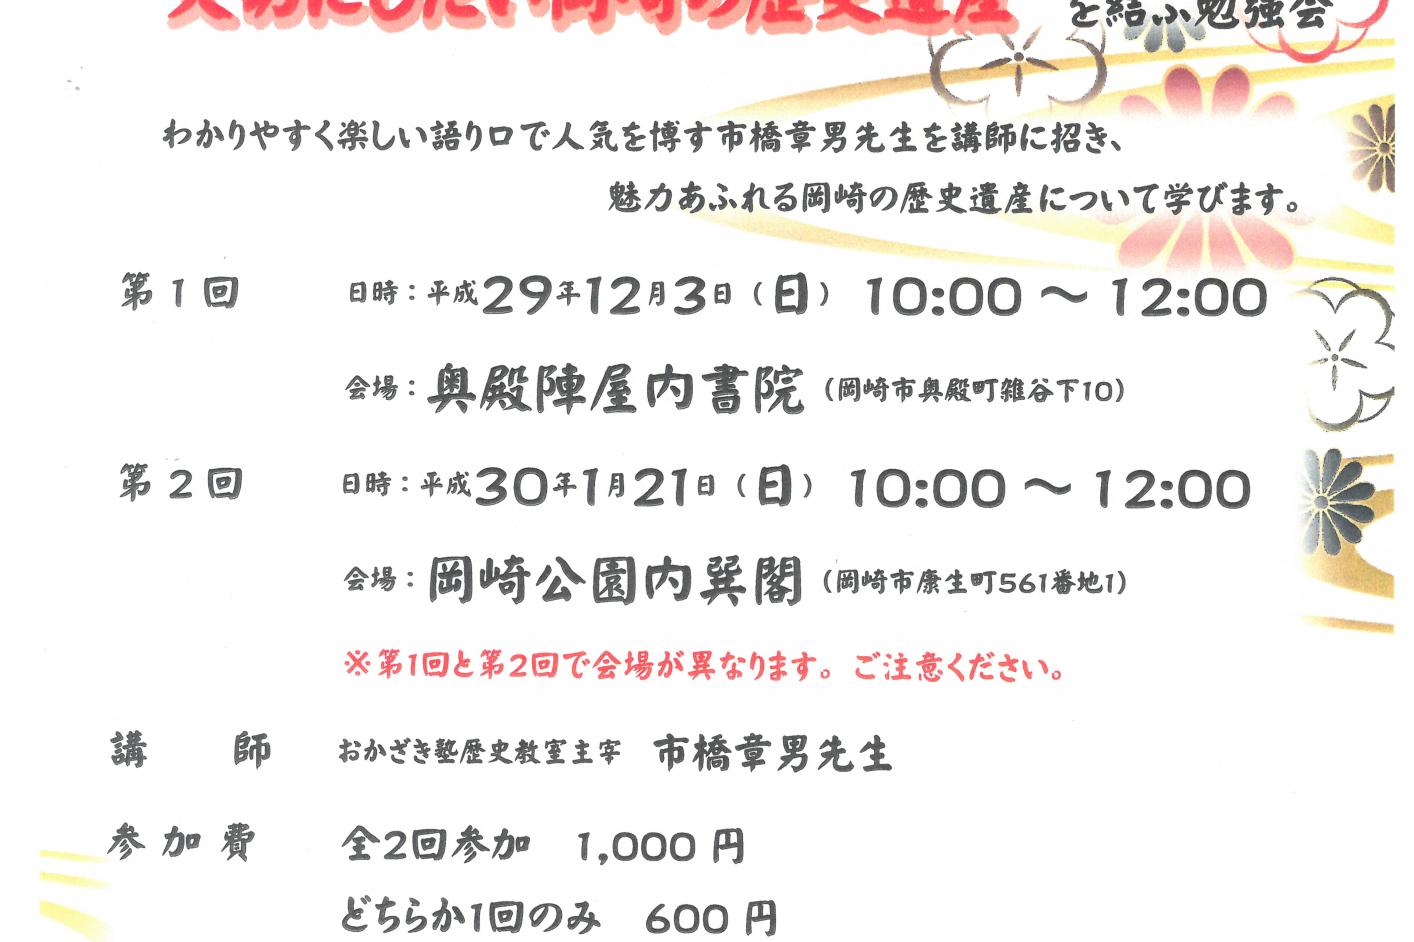 「市橋章男氏による“大切にしたい岡崎の歴史遺産”を結ぶ勉強会」を開催します！